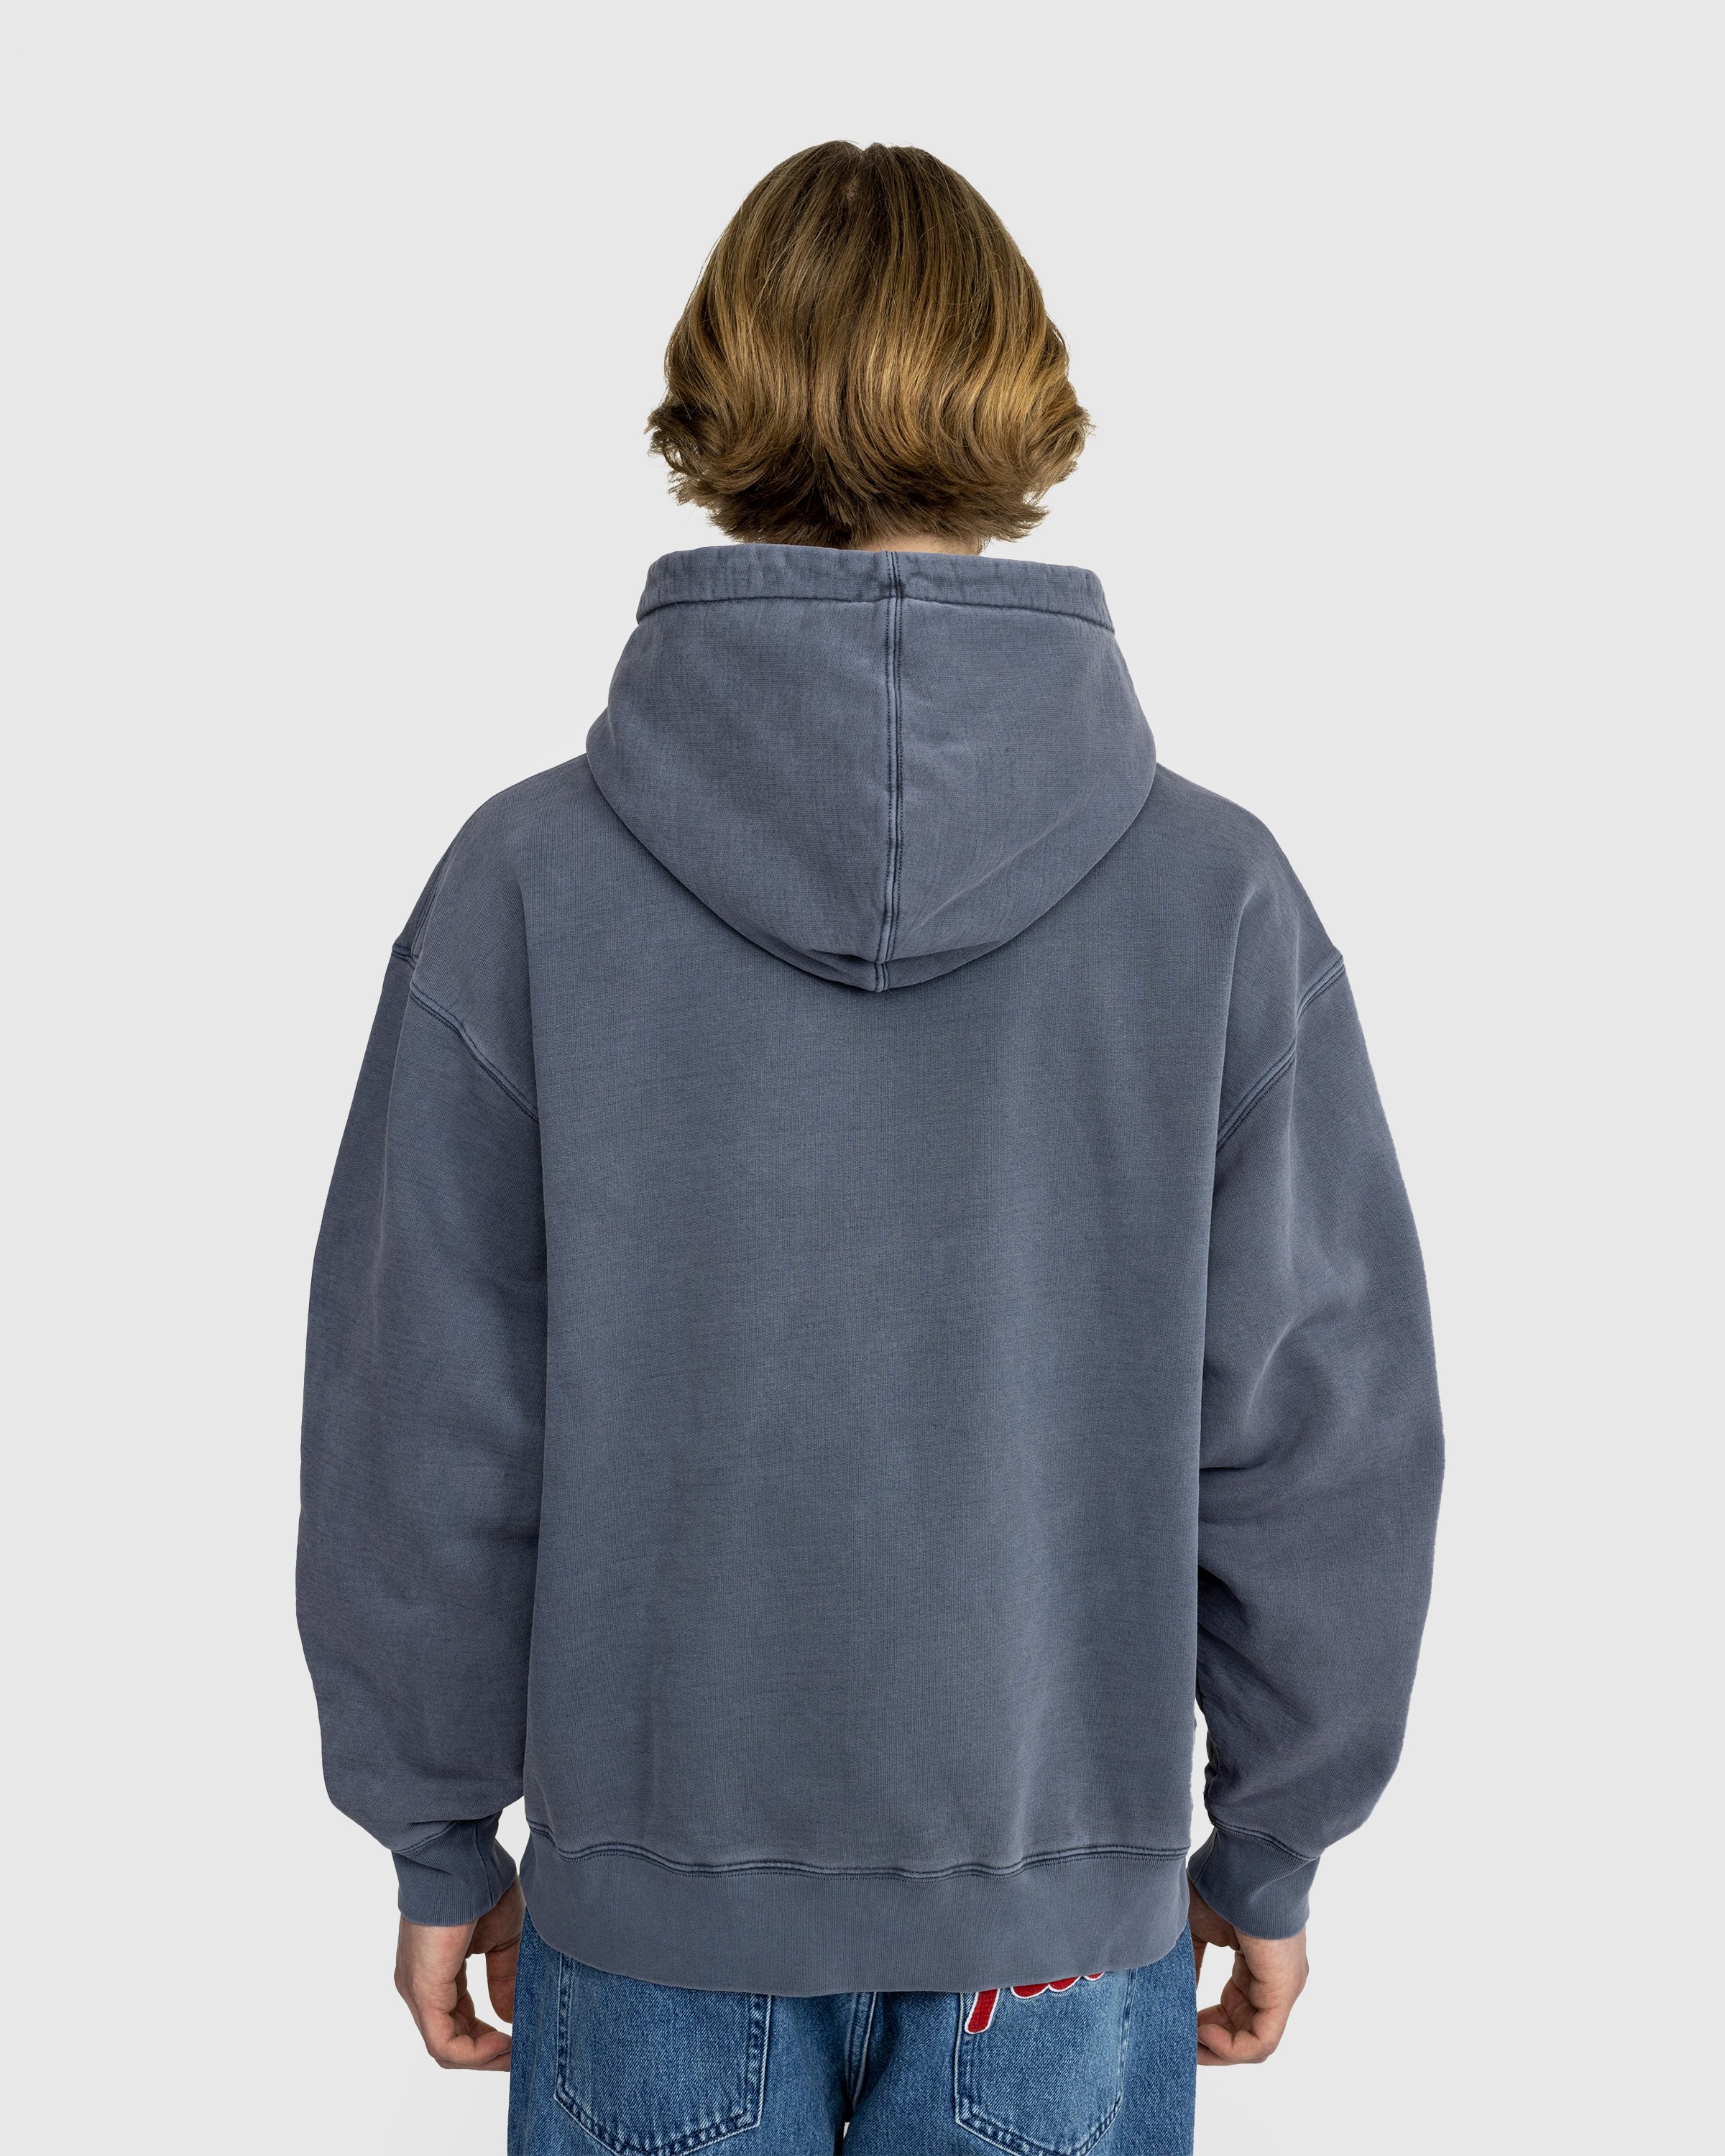 Patta - Basic Washed Boxy Hooded Sweater - Clothing - Grey - Image 3